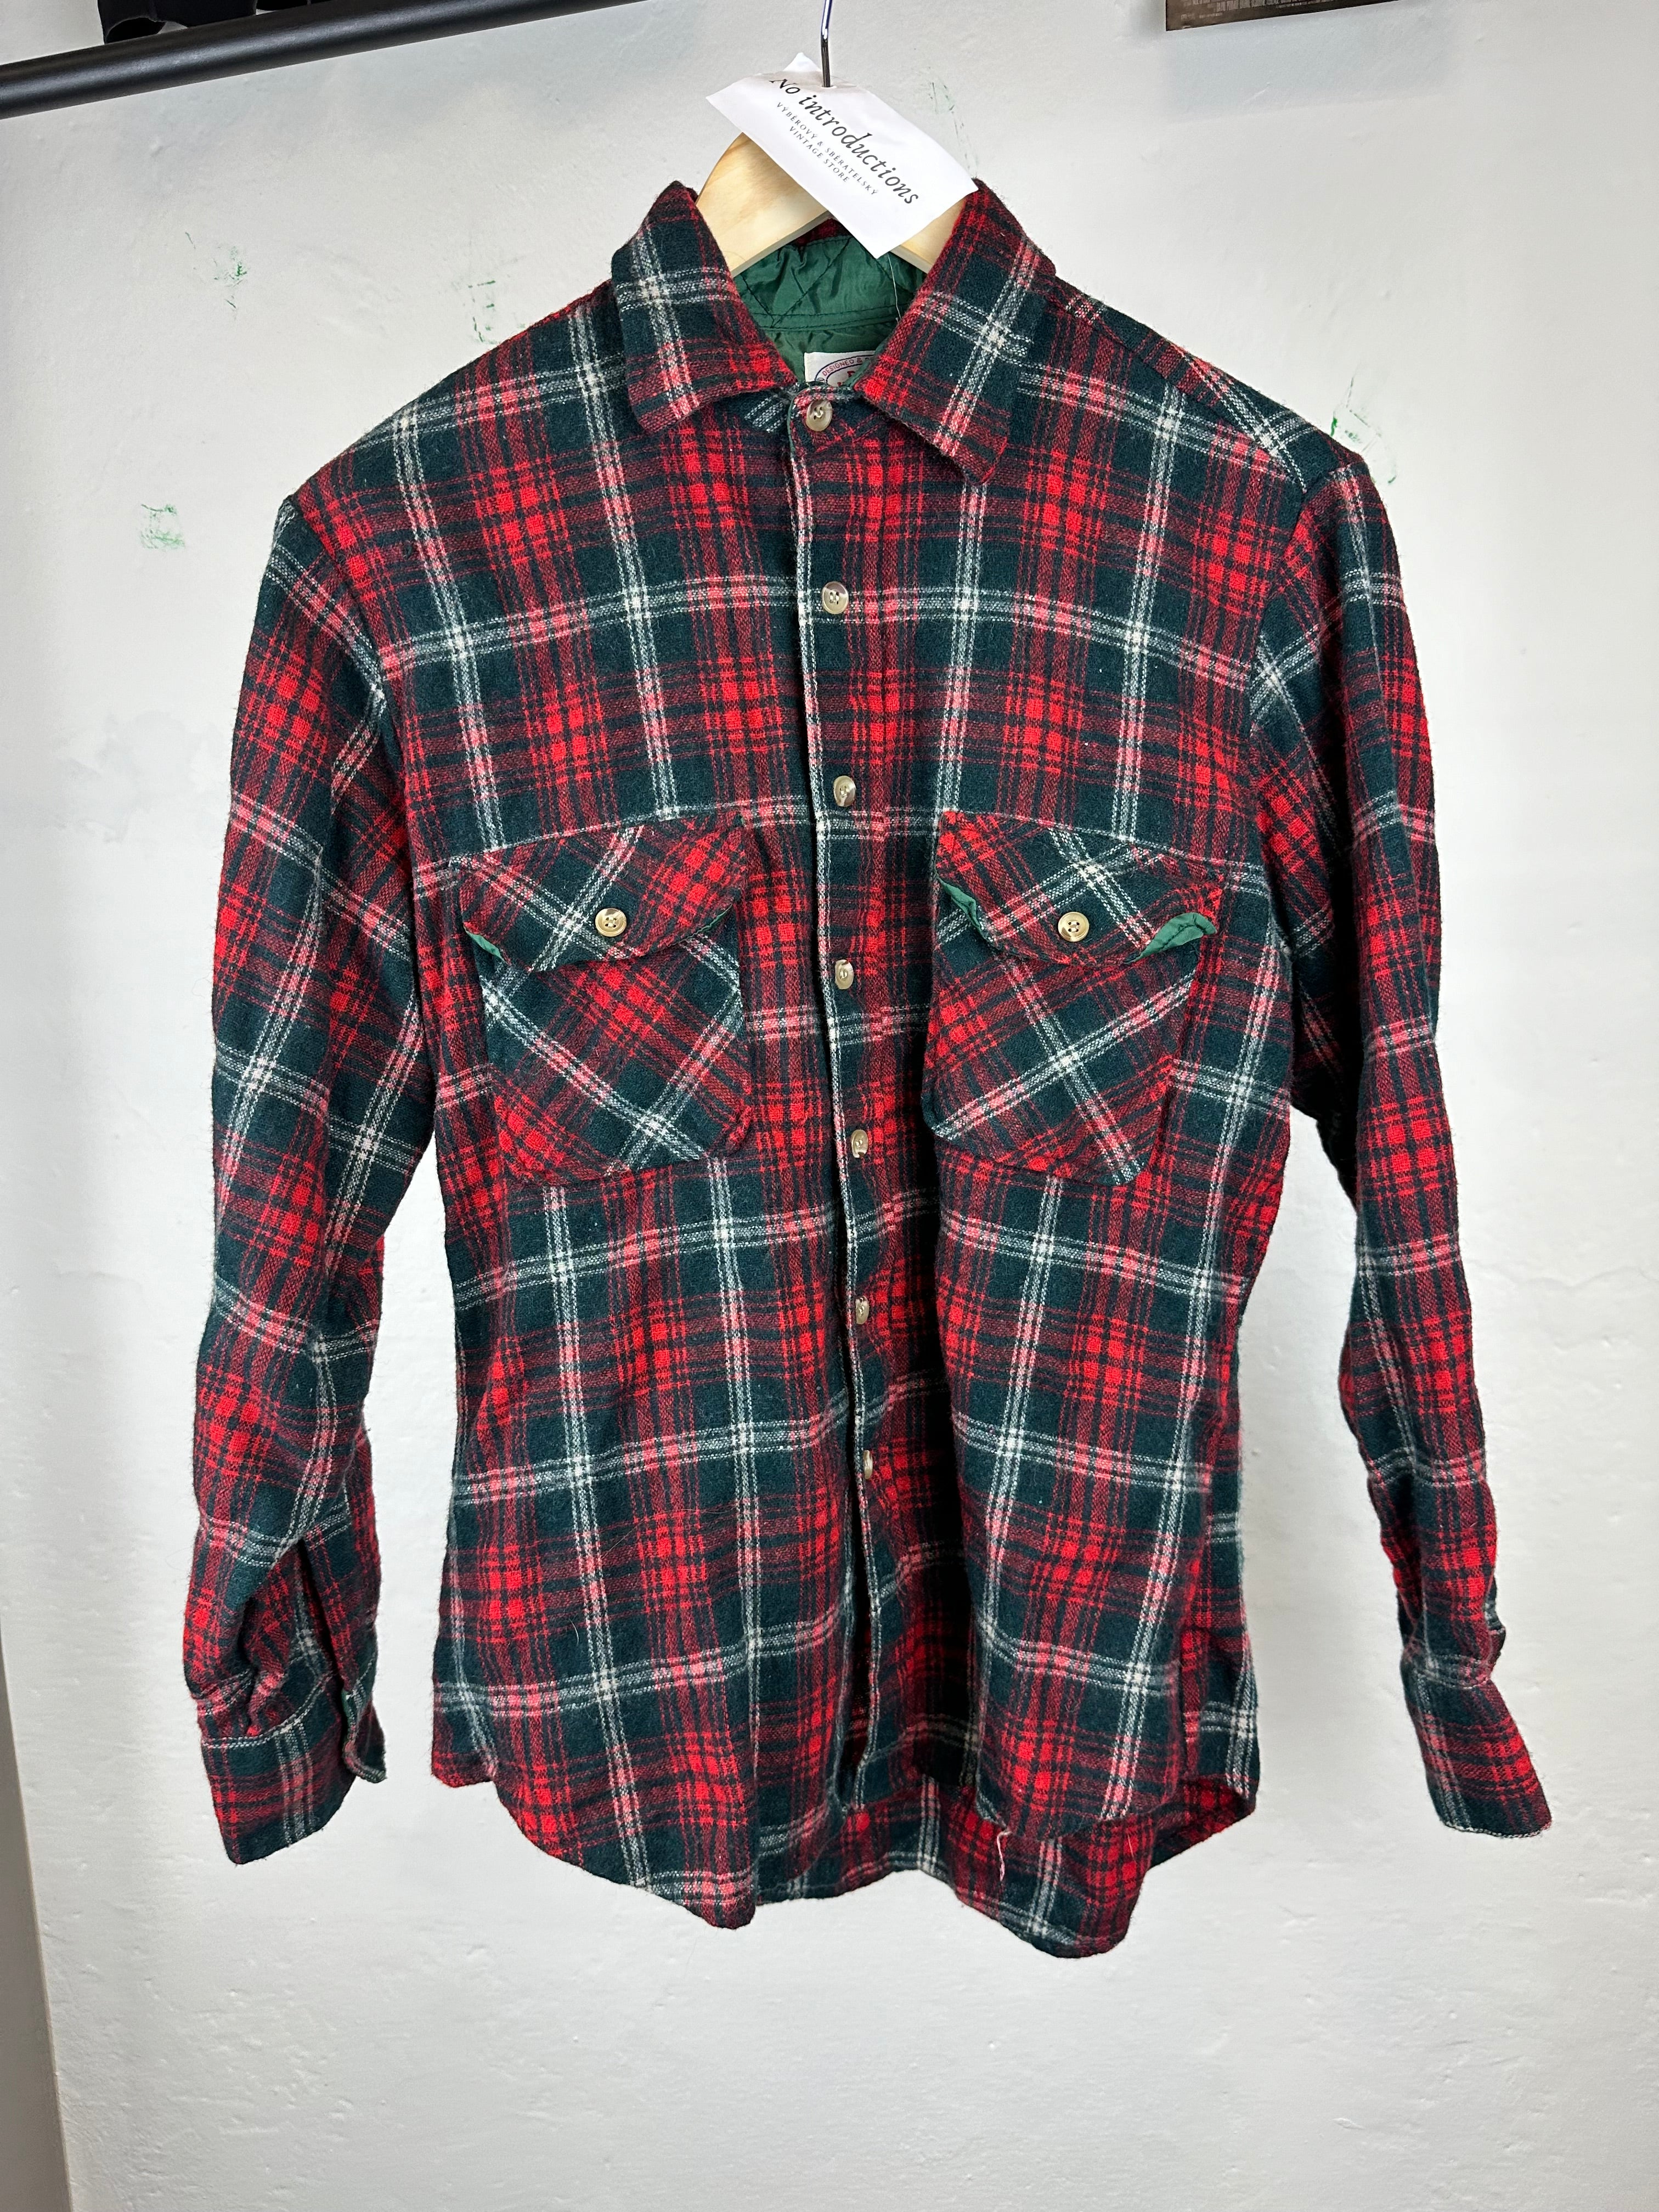 Vintage 80s Flannel Shirt - size M